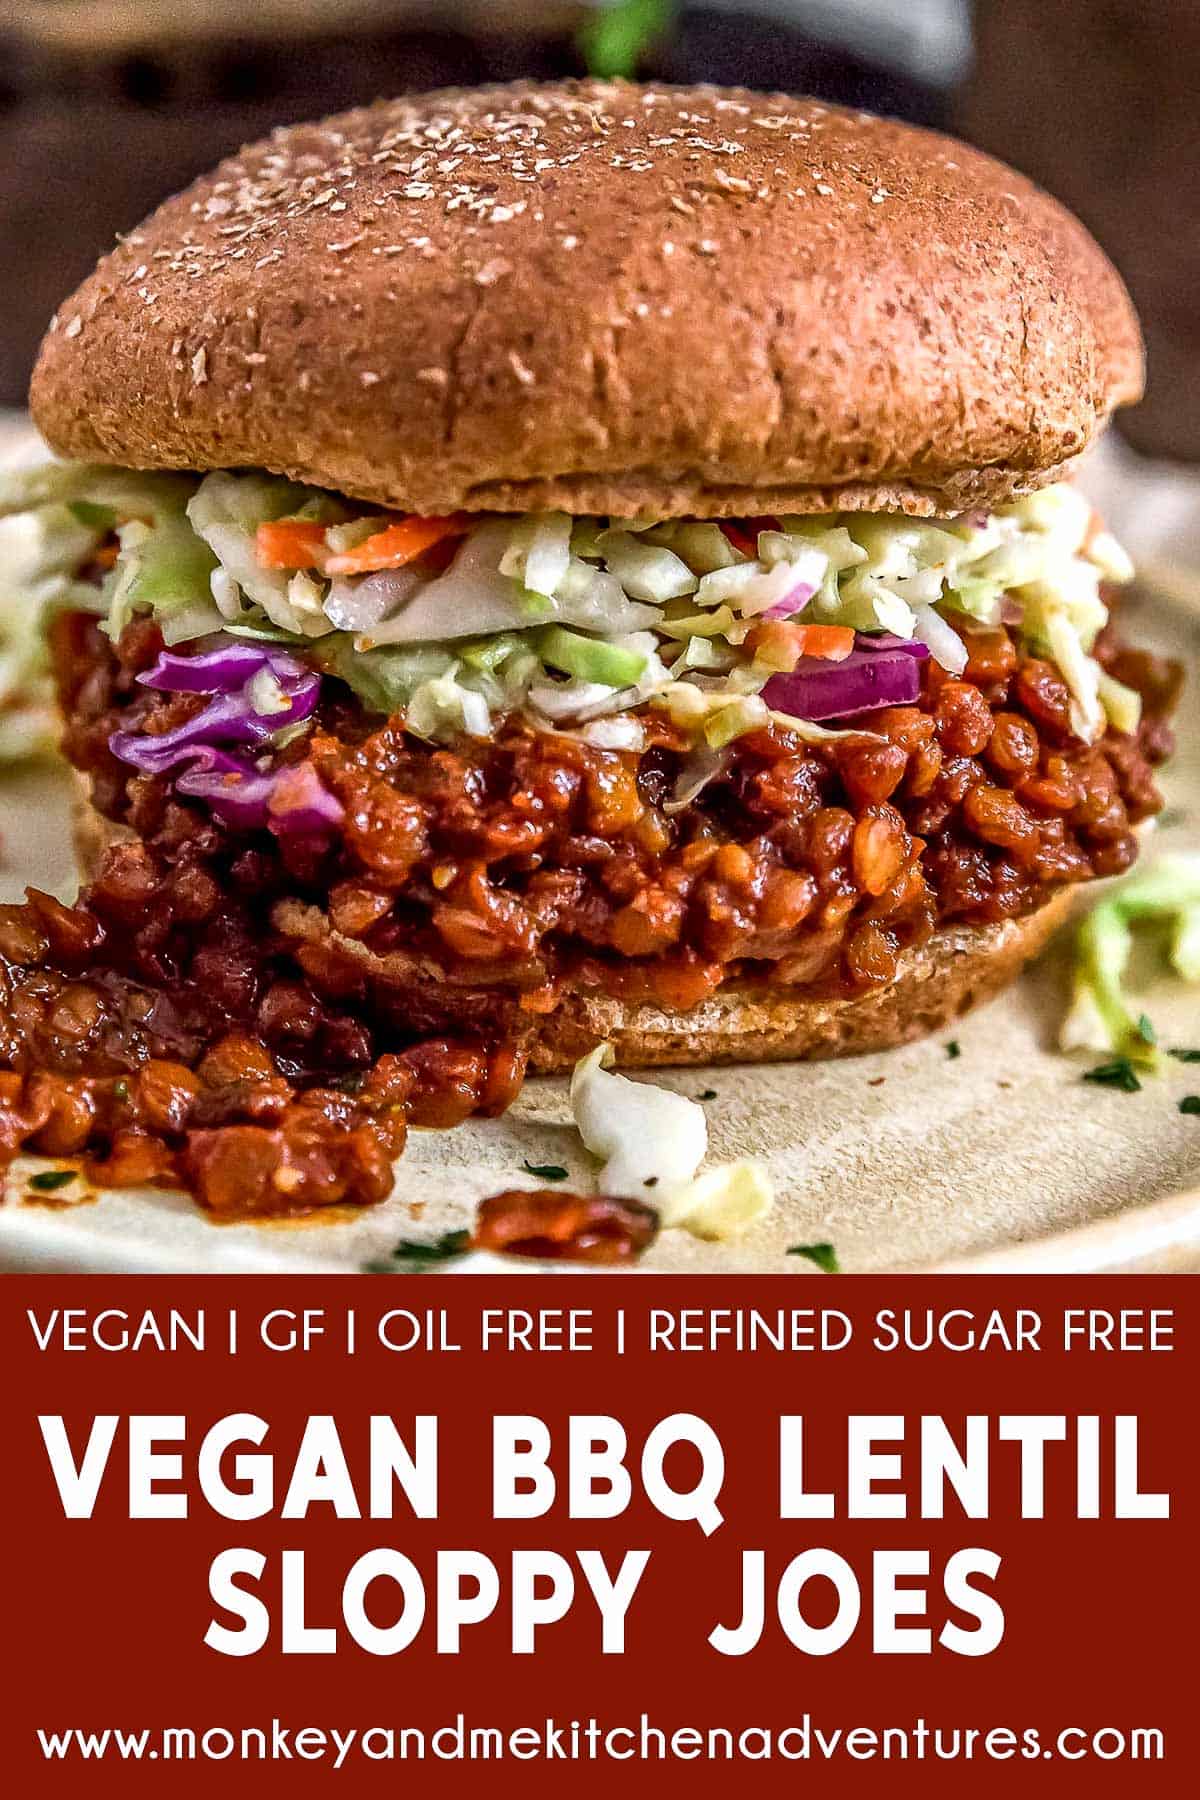 Vegan BBQ Lentil Sloppy Joes with Text Description